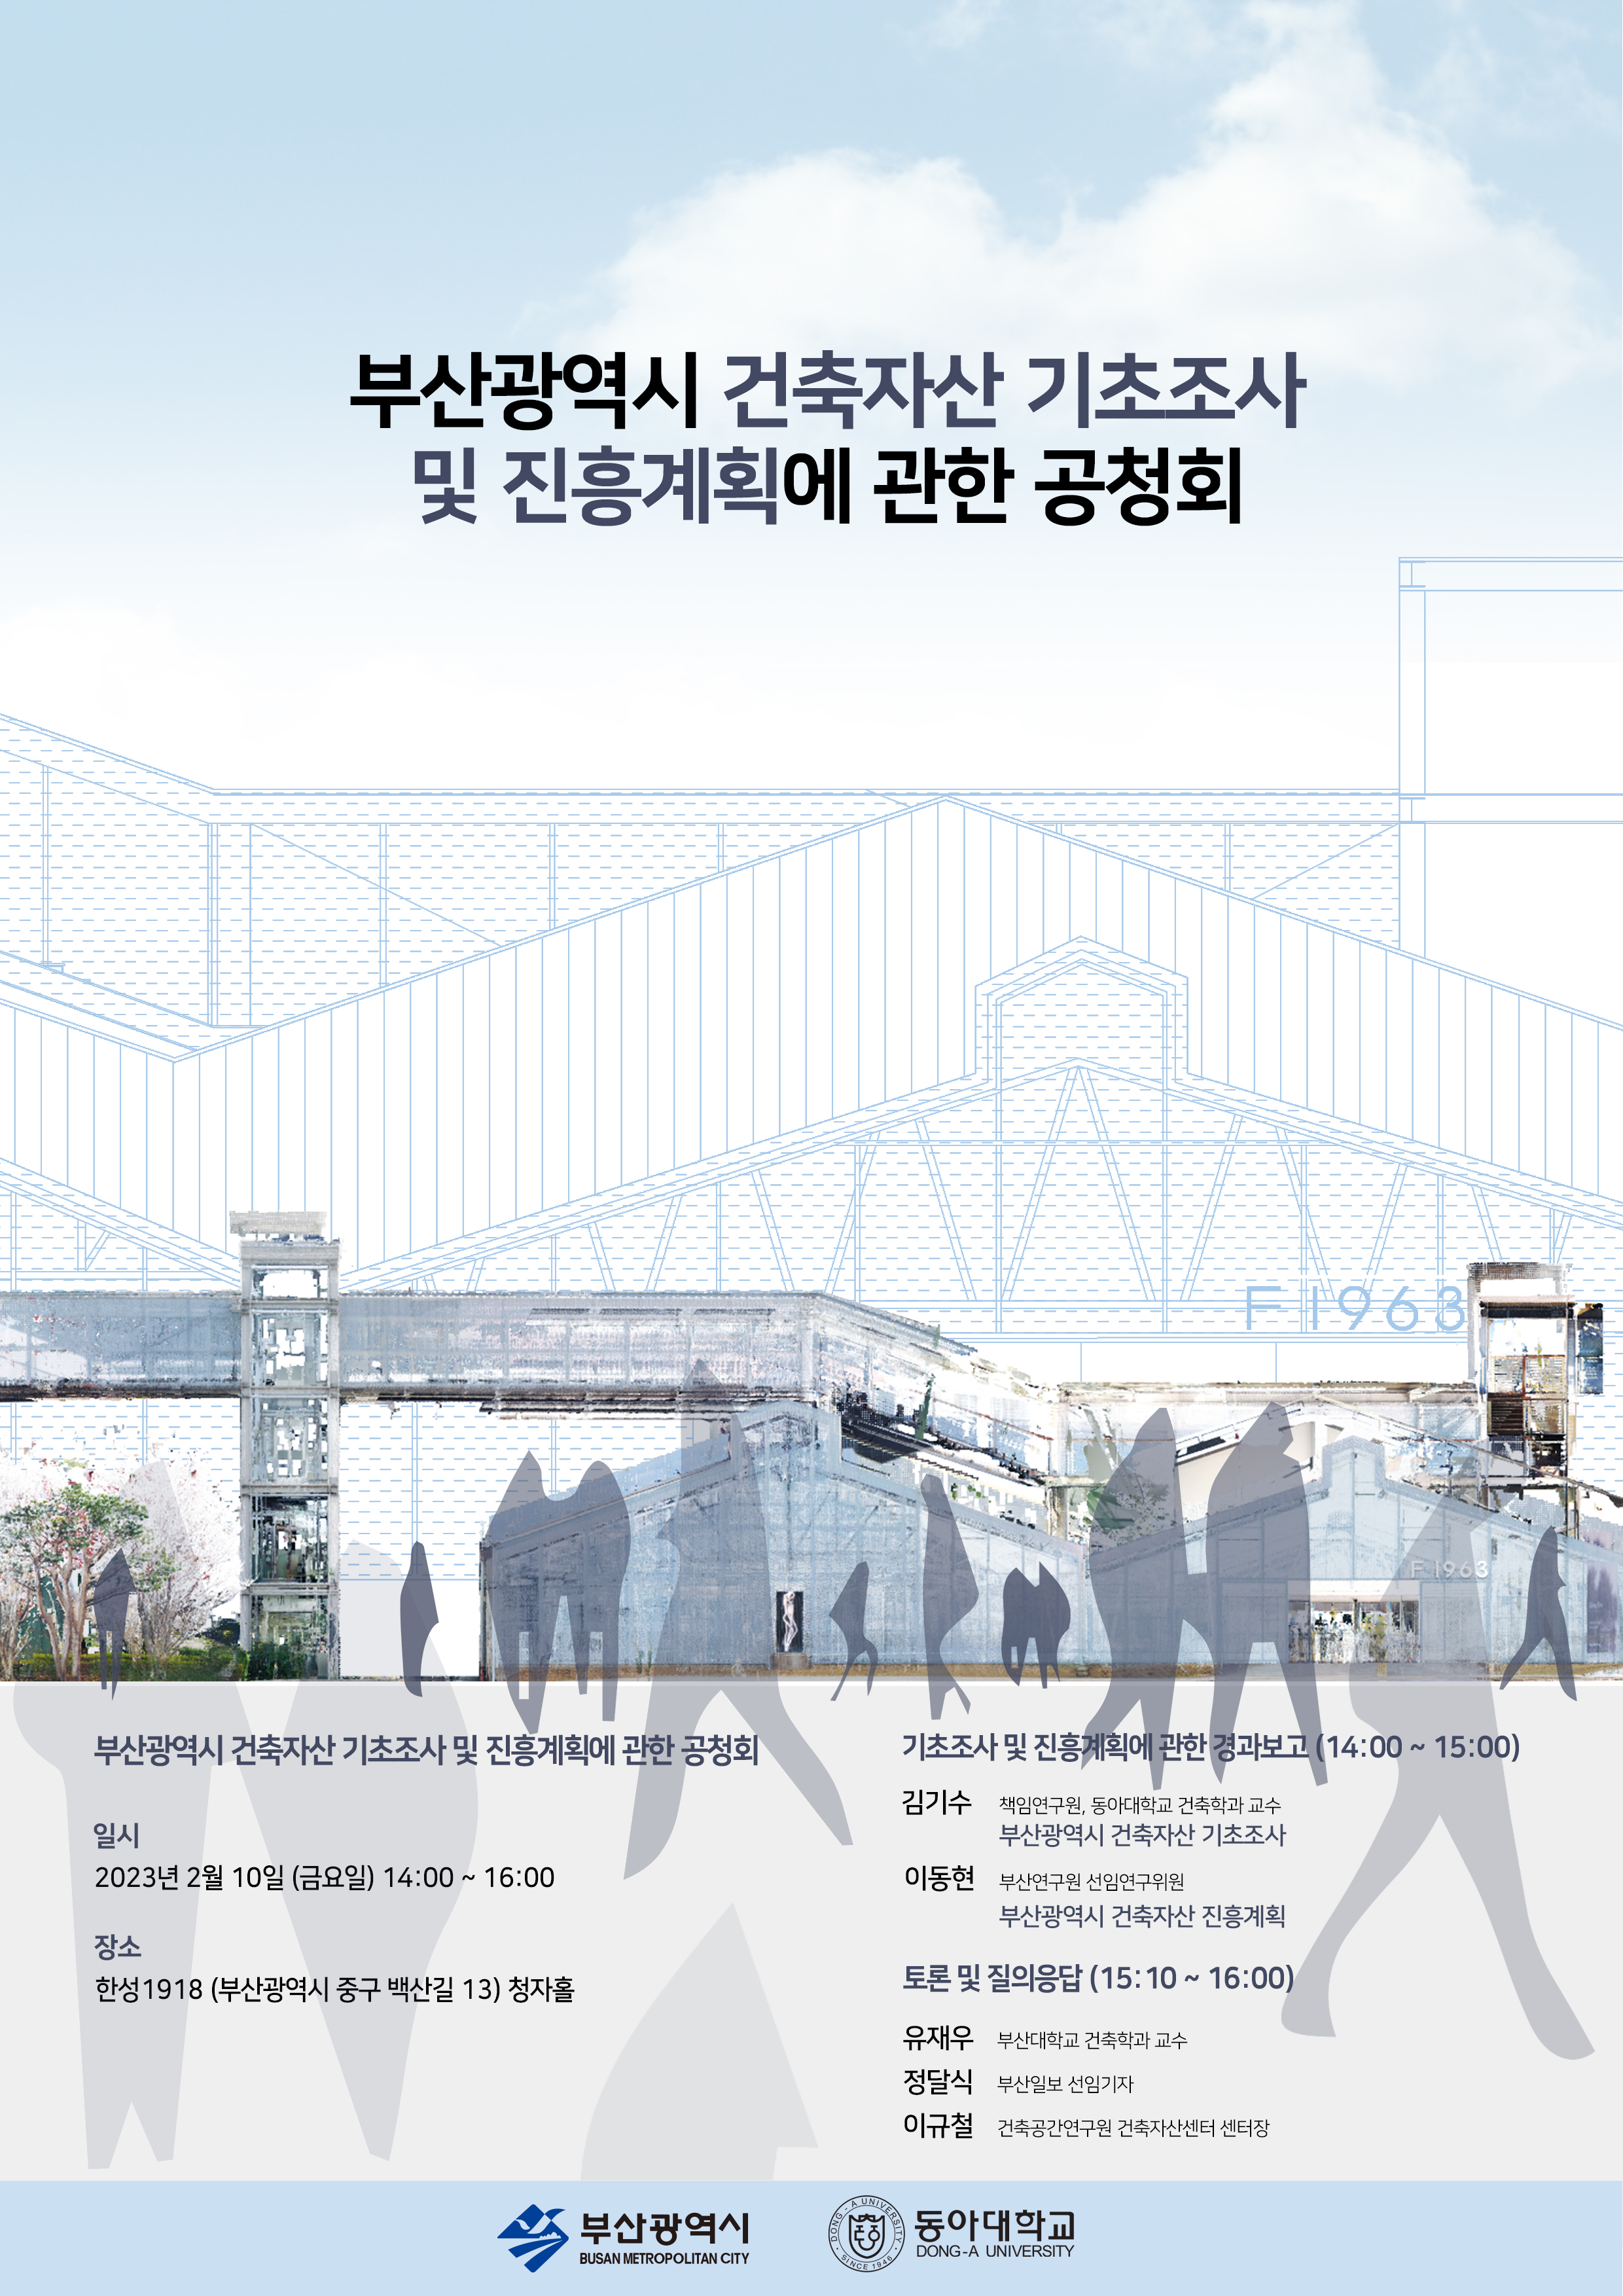 「부산광역시 건축자산 진흥계획(안)」 공청회 개최 알림